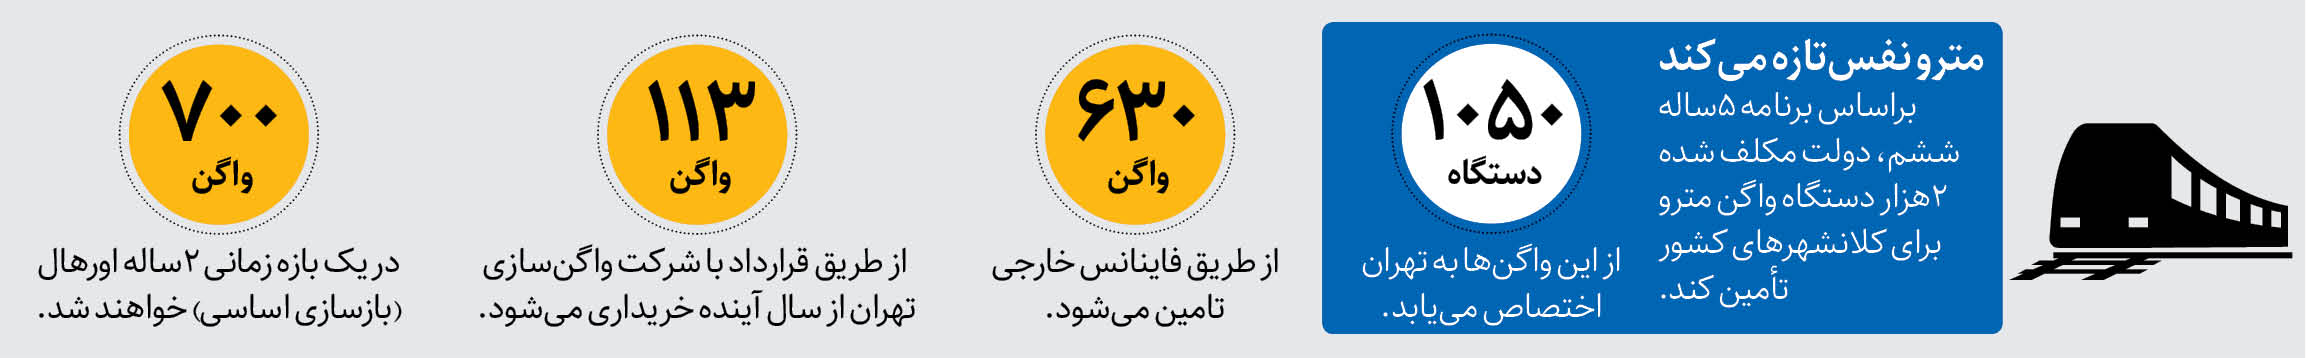 ۶۳۰واگن چینی، در راه متروی تهران